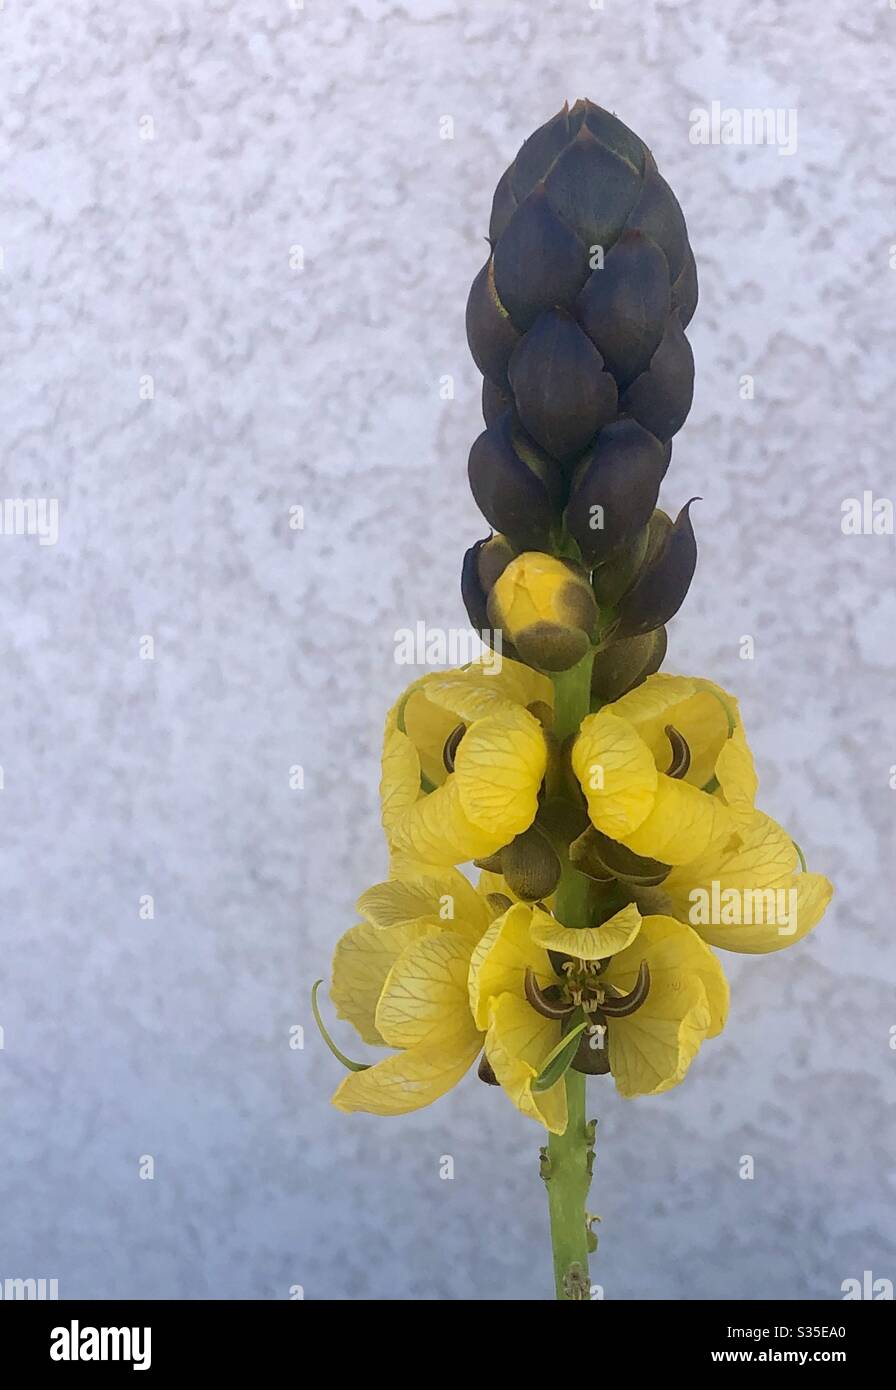 Popcorn Cassia.Single Blume, gelbe Blumen, hohe Spitzen, gerieben Blätter gibt Duft von Popcorn, Blume ähnelt Popcorn, Sonne lieben, kann sehr groß, Natur, natürlich schön, Nahaufnahme, Kopierer Raum Stockfoto